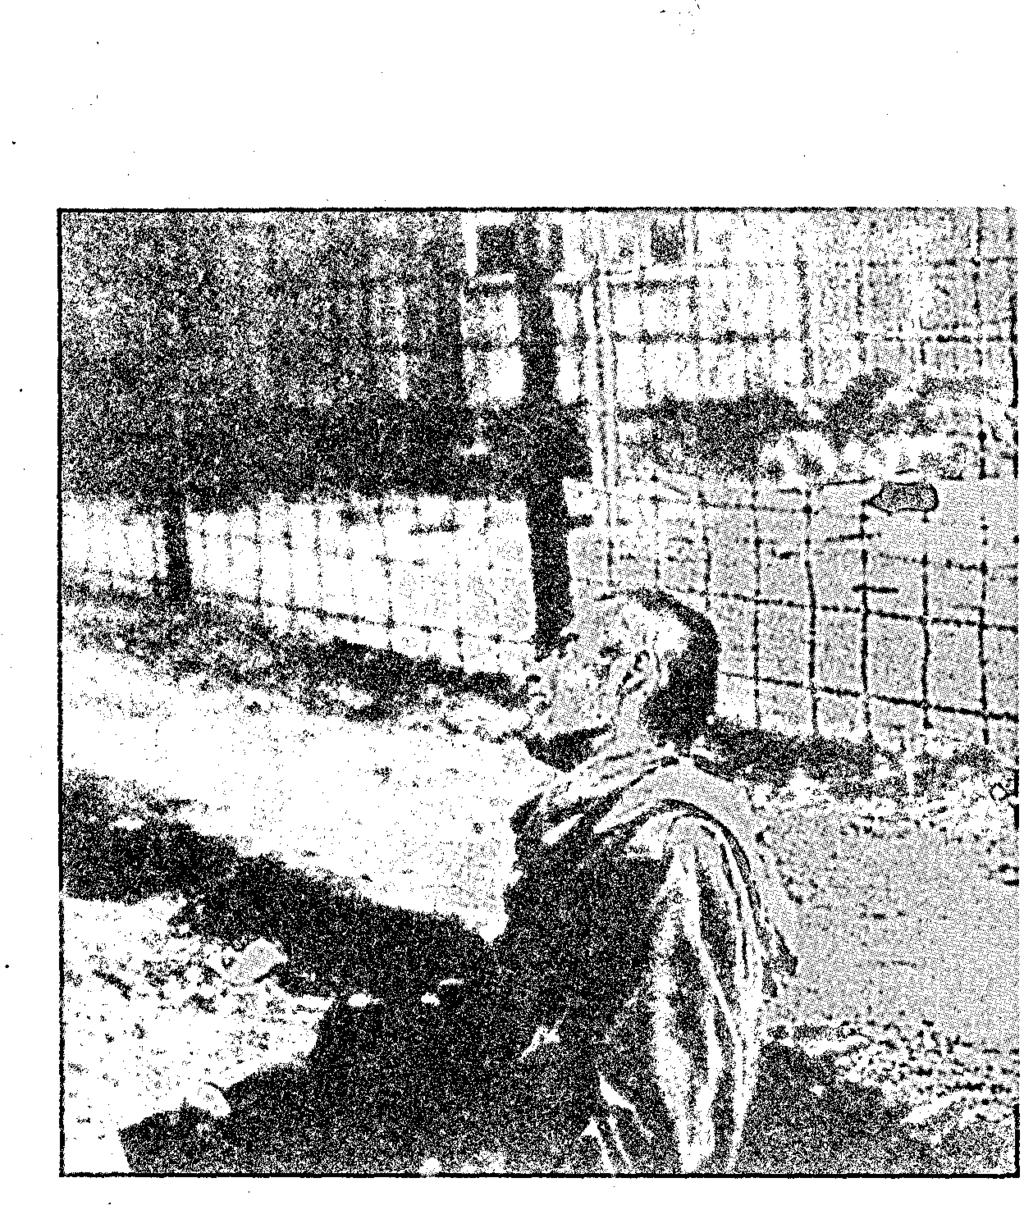 ŞEYTAN Toplama kampında bir kurban, Avrupa, 1945. Şeytan'ın en gerçek görüntüsü, insanların acımasızlığında ve ilgisizliğinde yatmaktadır. ABD Savunma Bakanlığı'nın izniyle, Washington.